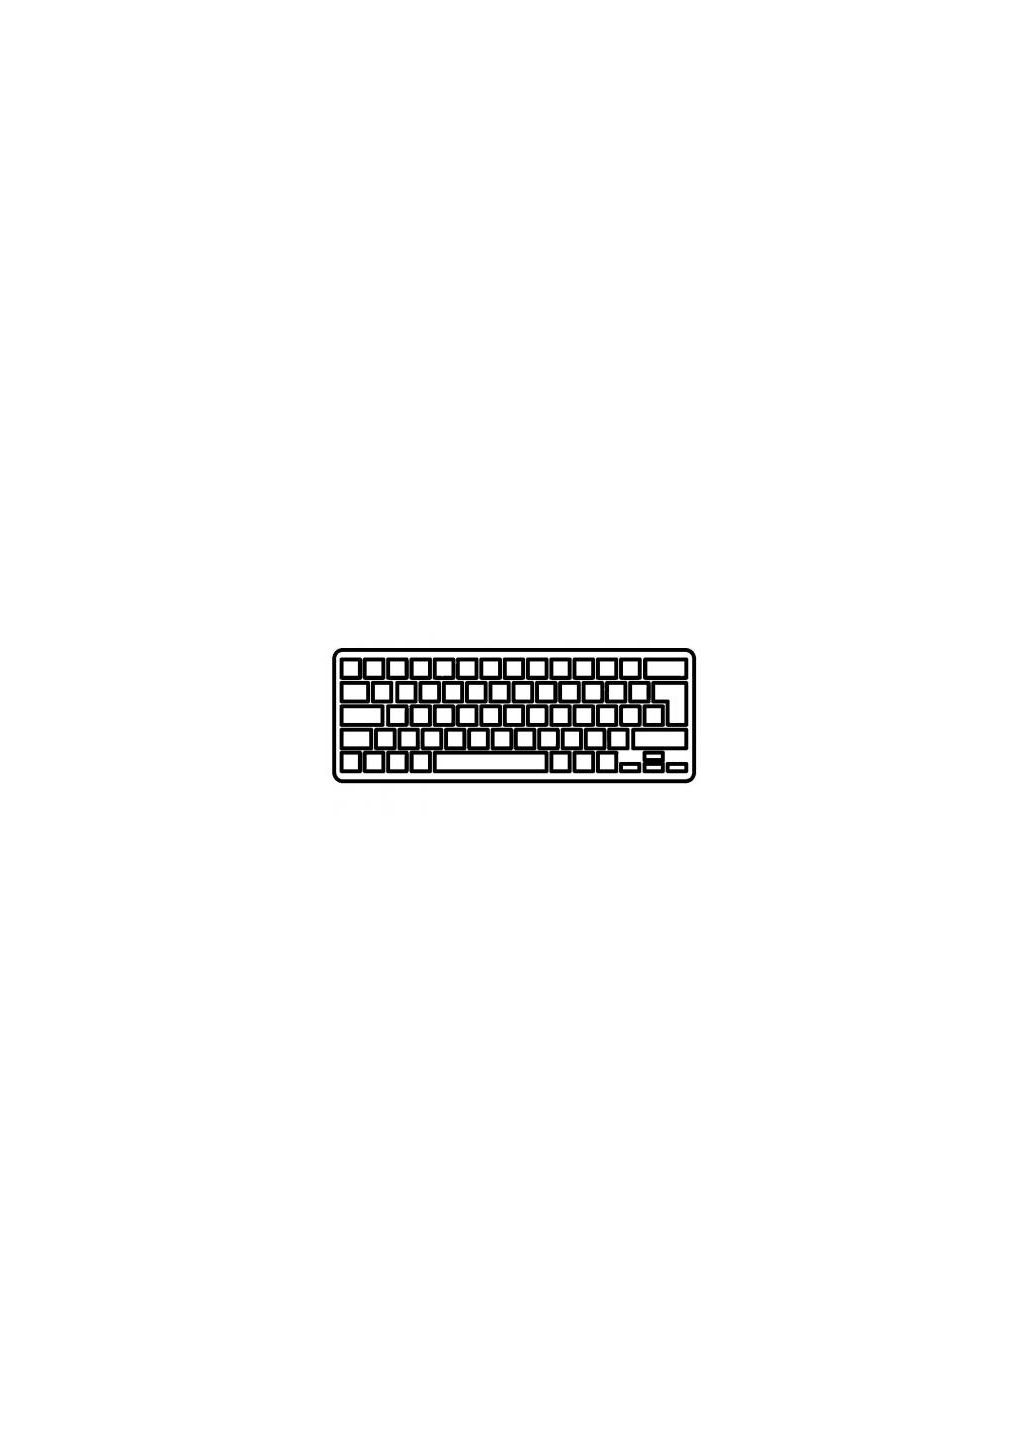 Клавиатура ноутбука Aspire S7191 (11,6") серебро без рамки подсветкой RU (A43799) Acer aspire s7-191 (11, 6") серебро без рамки подсветкой (276706589)